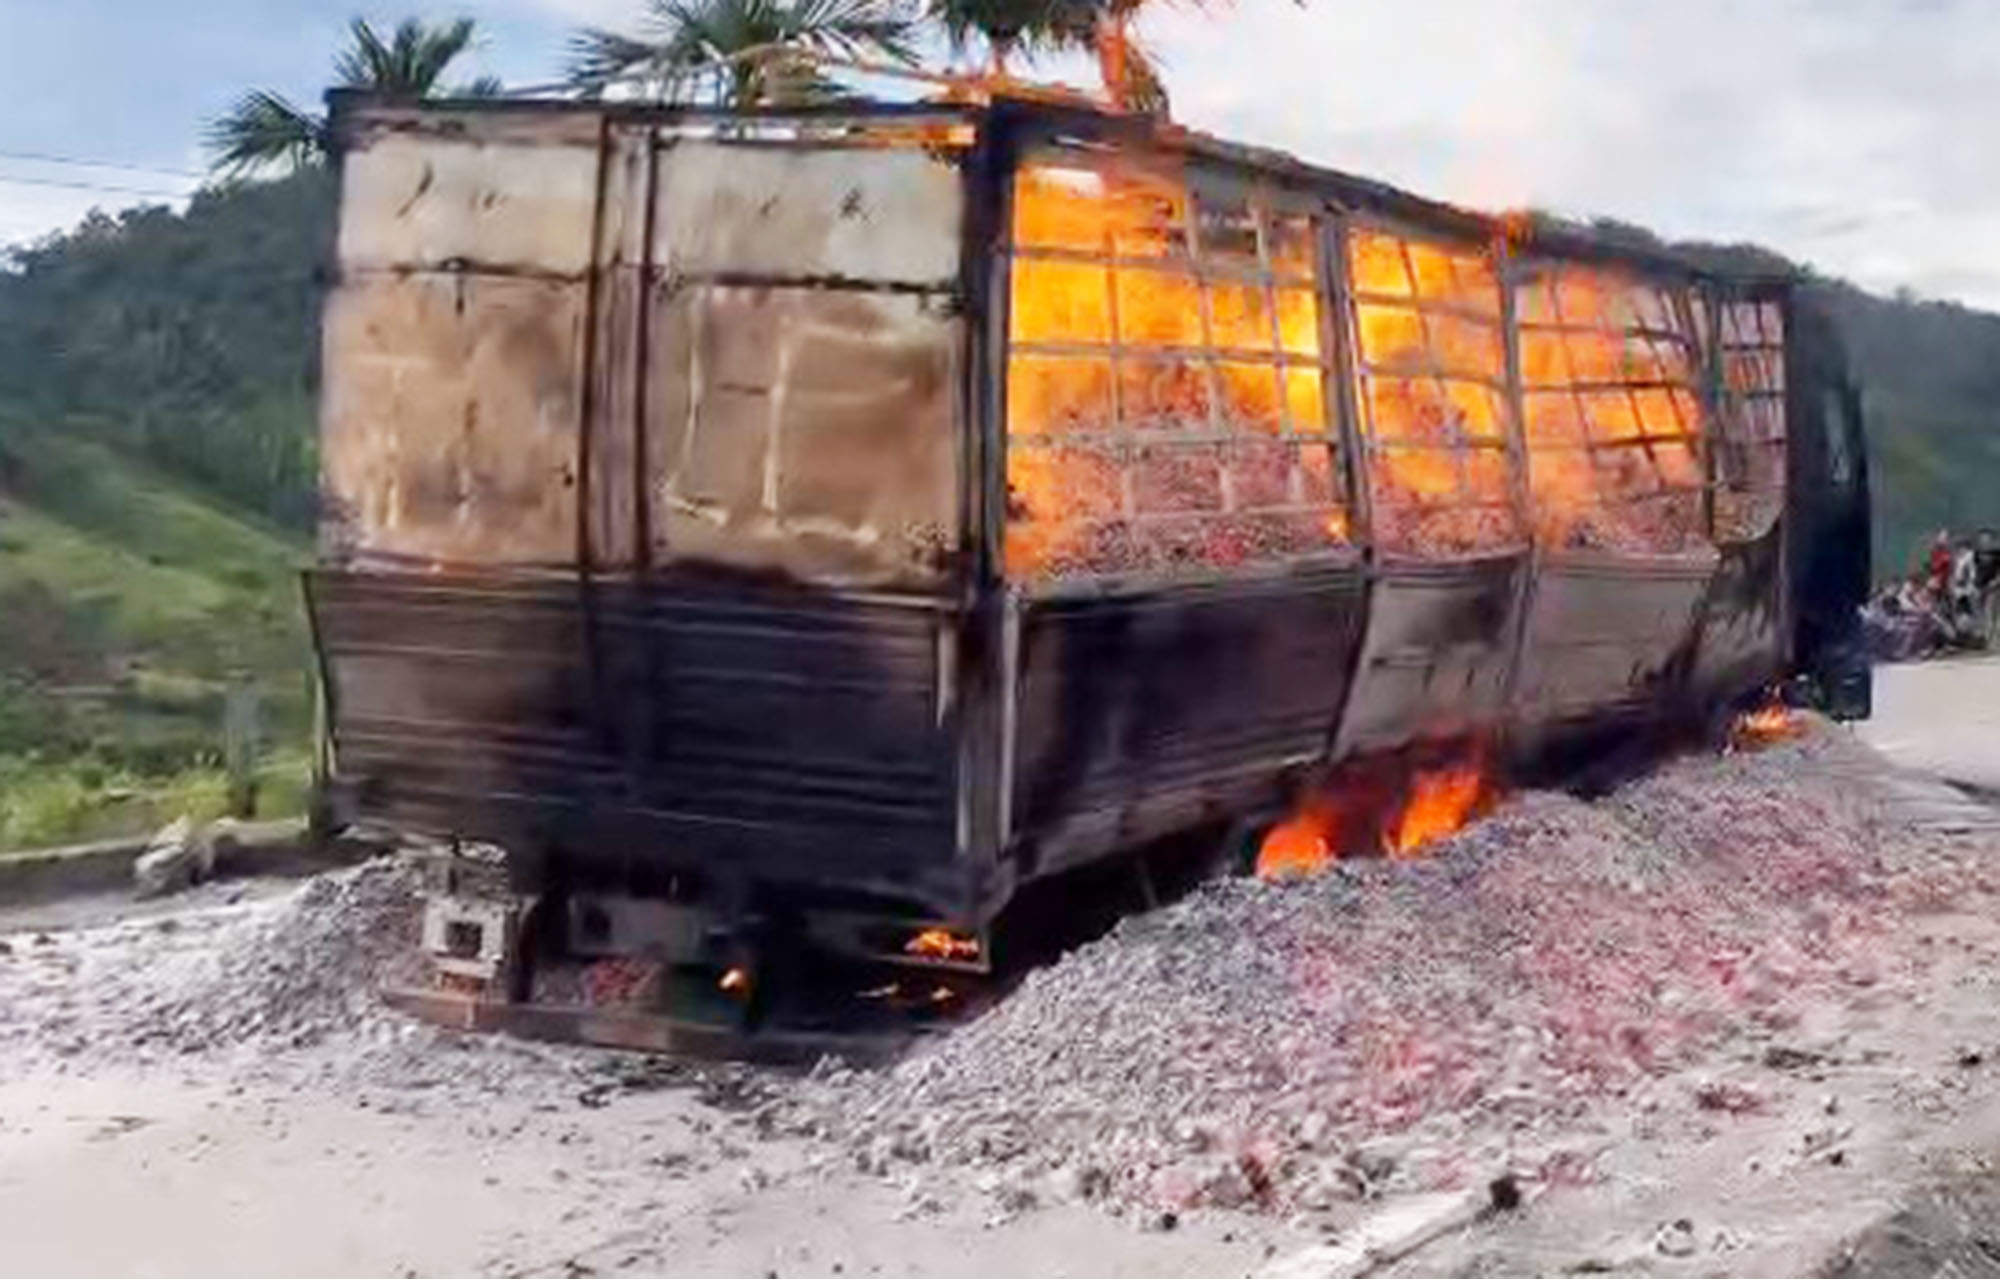 Quảng Nam: Xe tải chở hơn 15 tấn than bốc cháy ngùn ngụt, tài xế may mắn thoát thân - Ảnh 1.